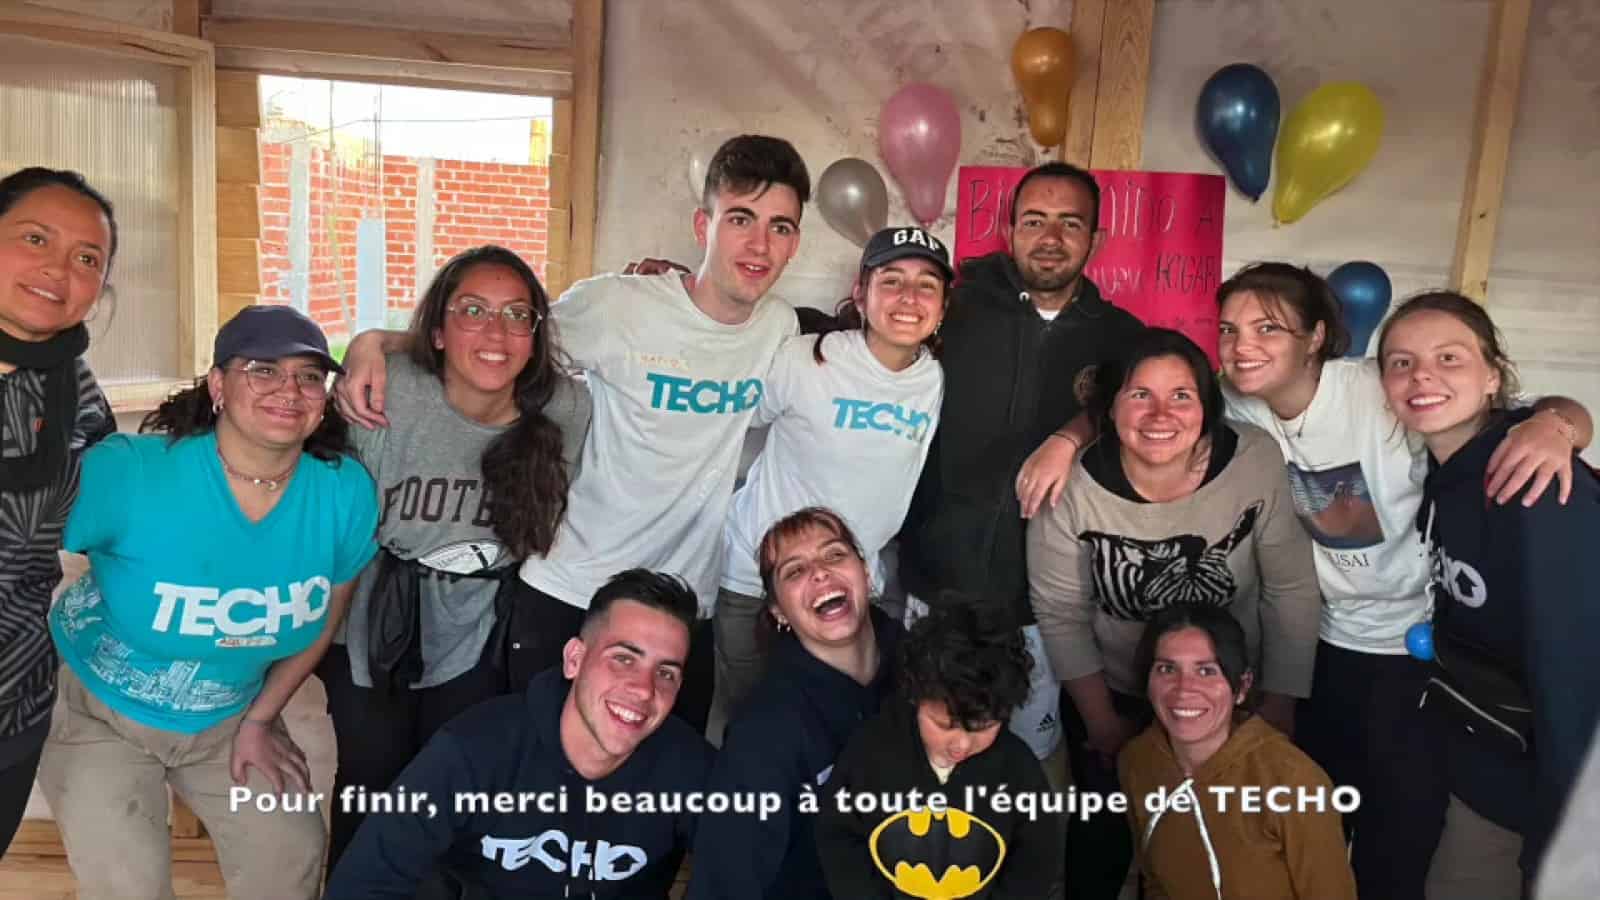 La experiencia de Solene, voluntaria francesa en Argentina